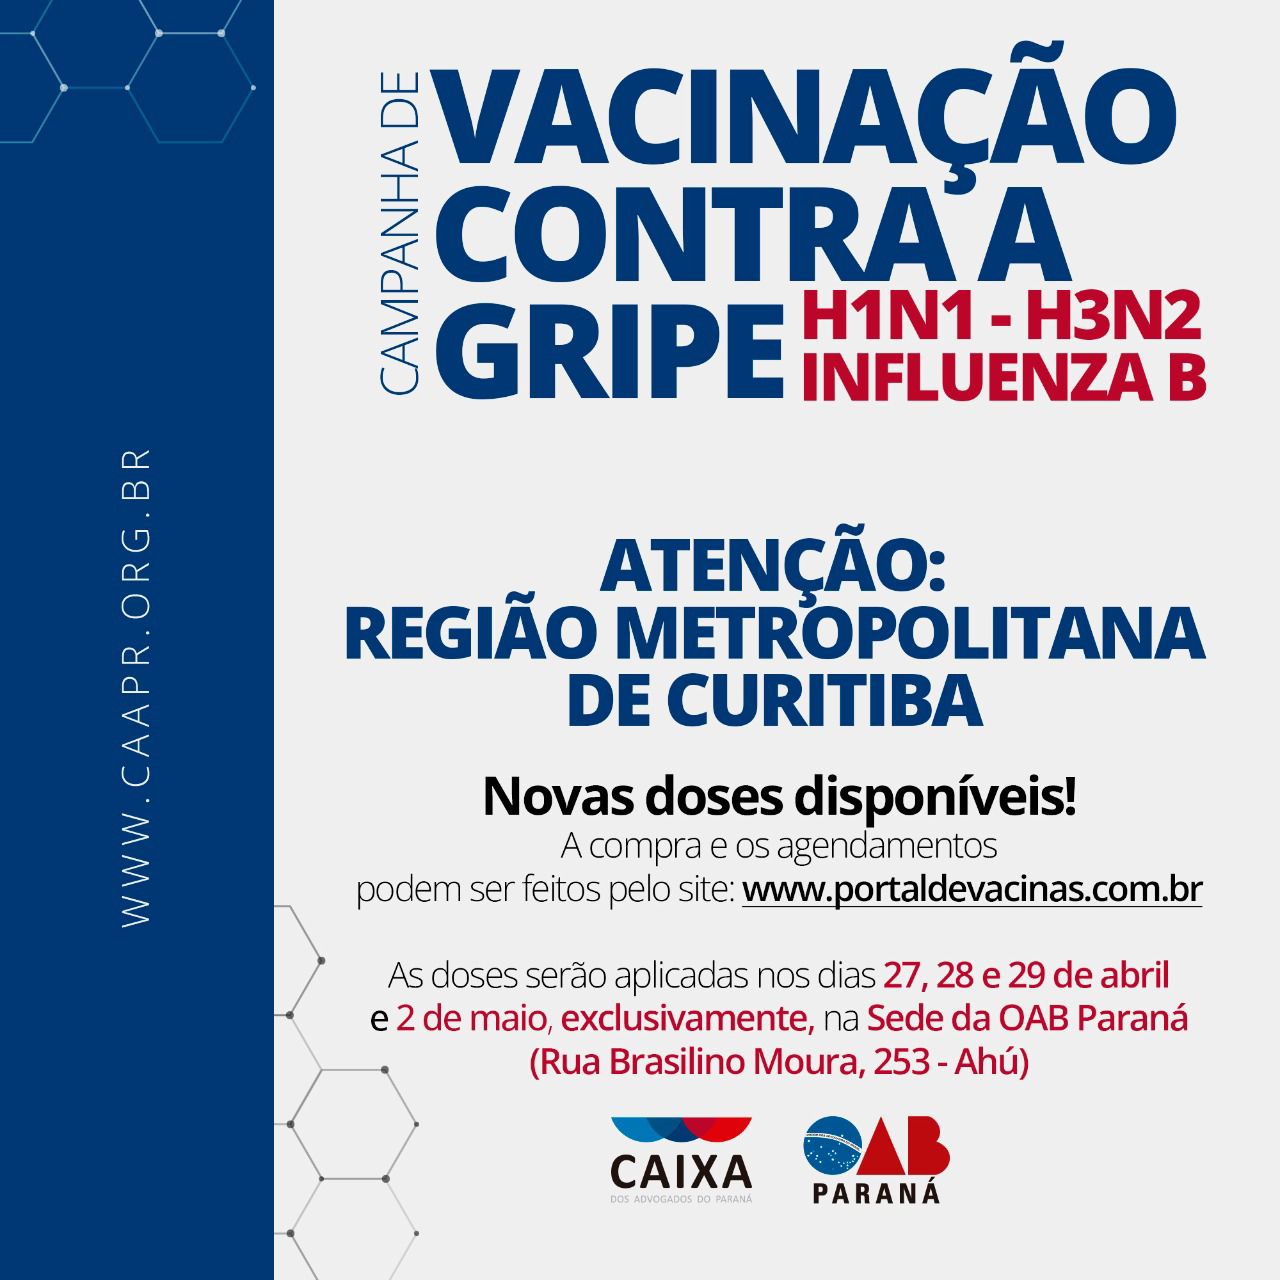 CAMPANHA DE VACINAÇÃO CONTRA A GRIPE H1N1-H3N2 INFLUENZA B